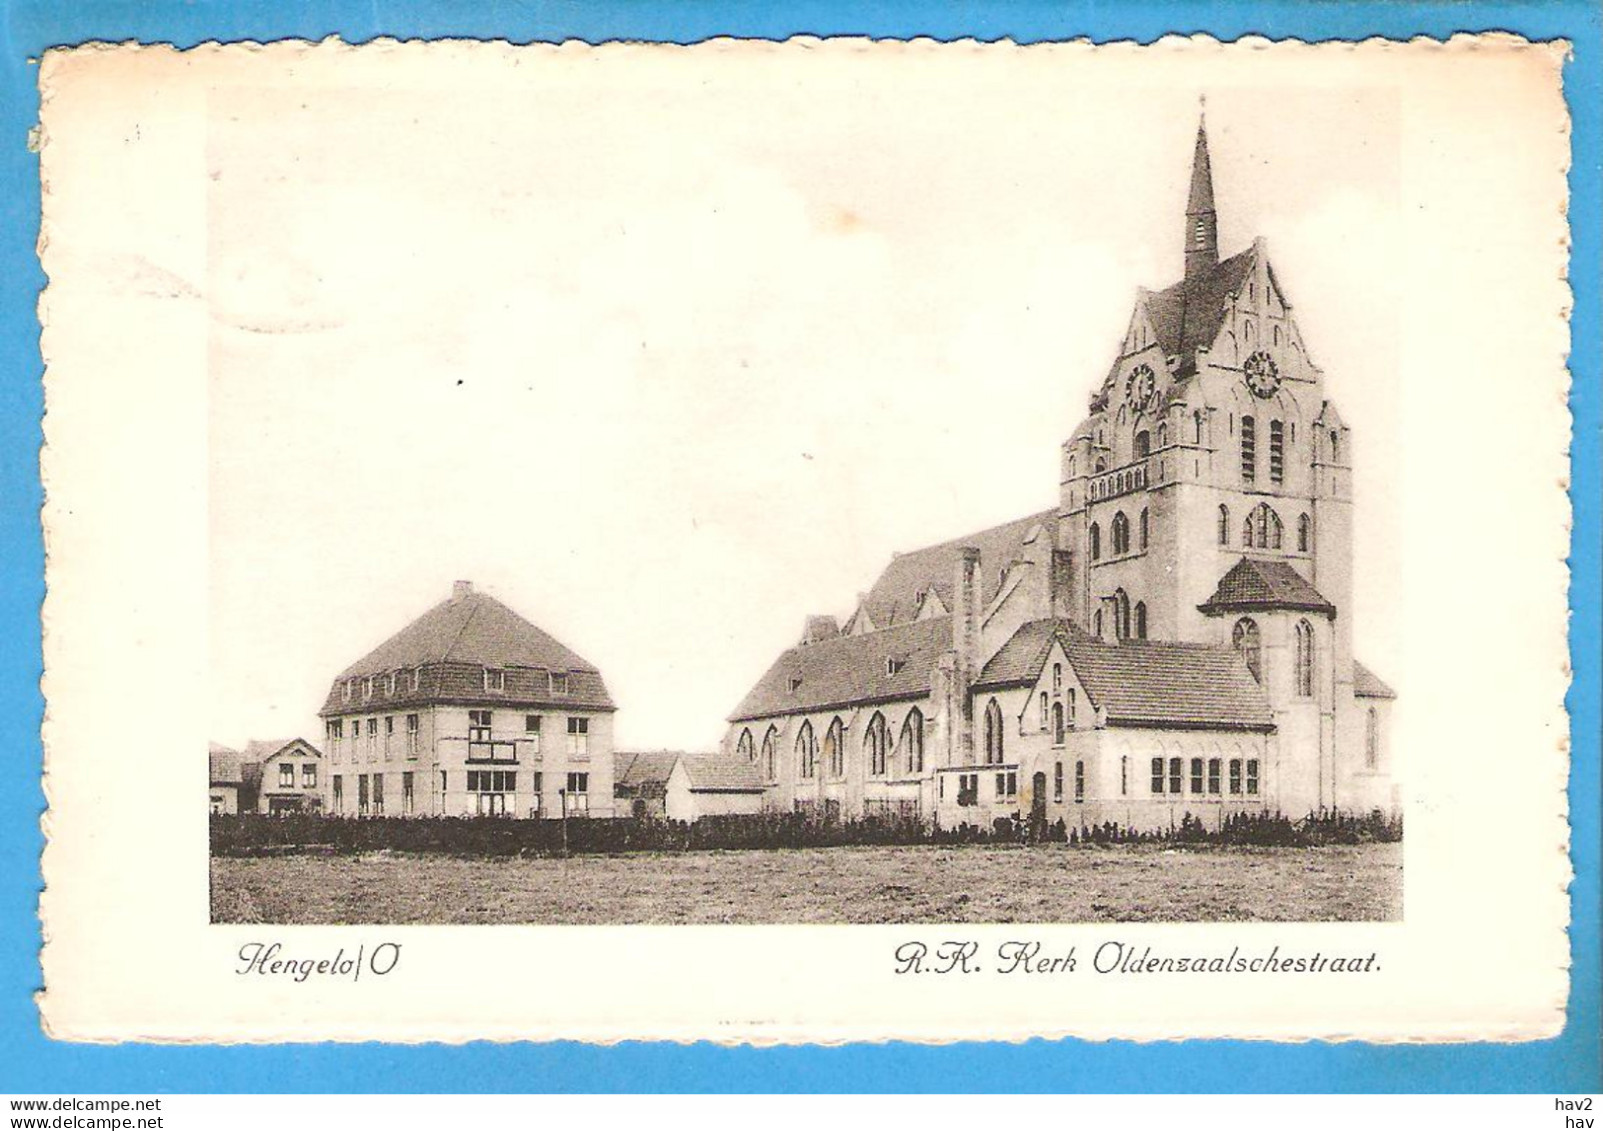 Hengelo RK Kerk Oldenzaalschestraat 1942 RY51571 - Hengelo (Ov)